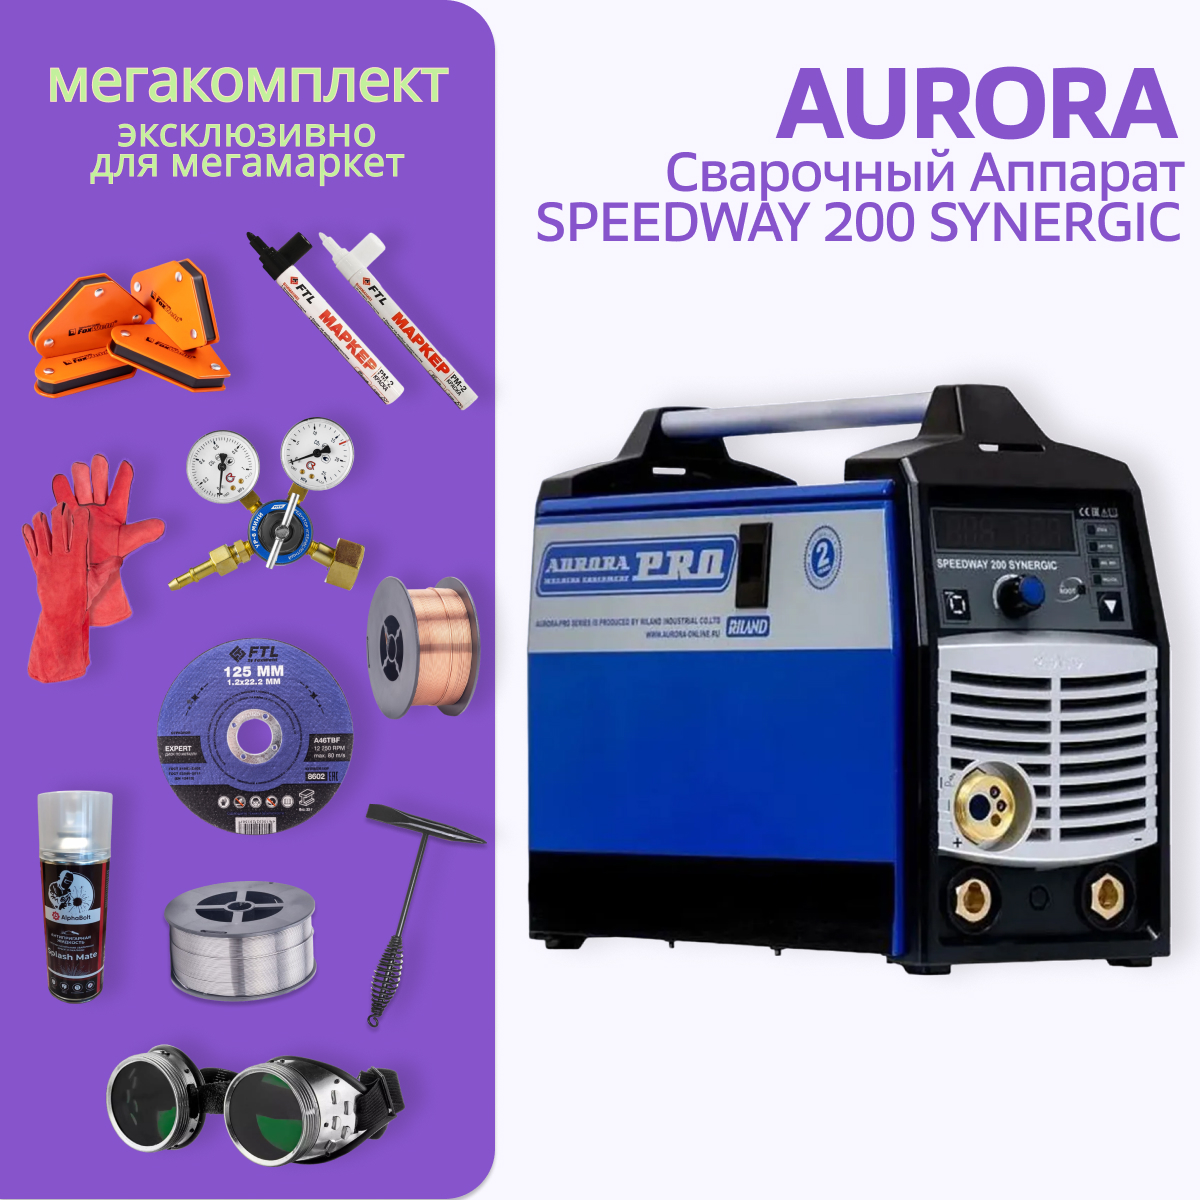 фото Сварочный полуавтомат aurorapro speedway 200 synergic + мега комплект